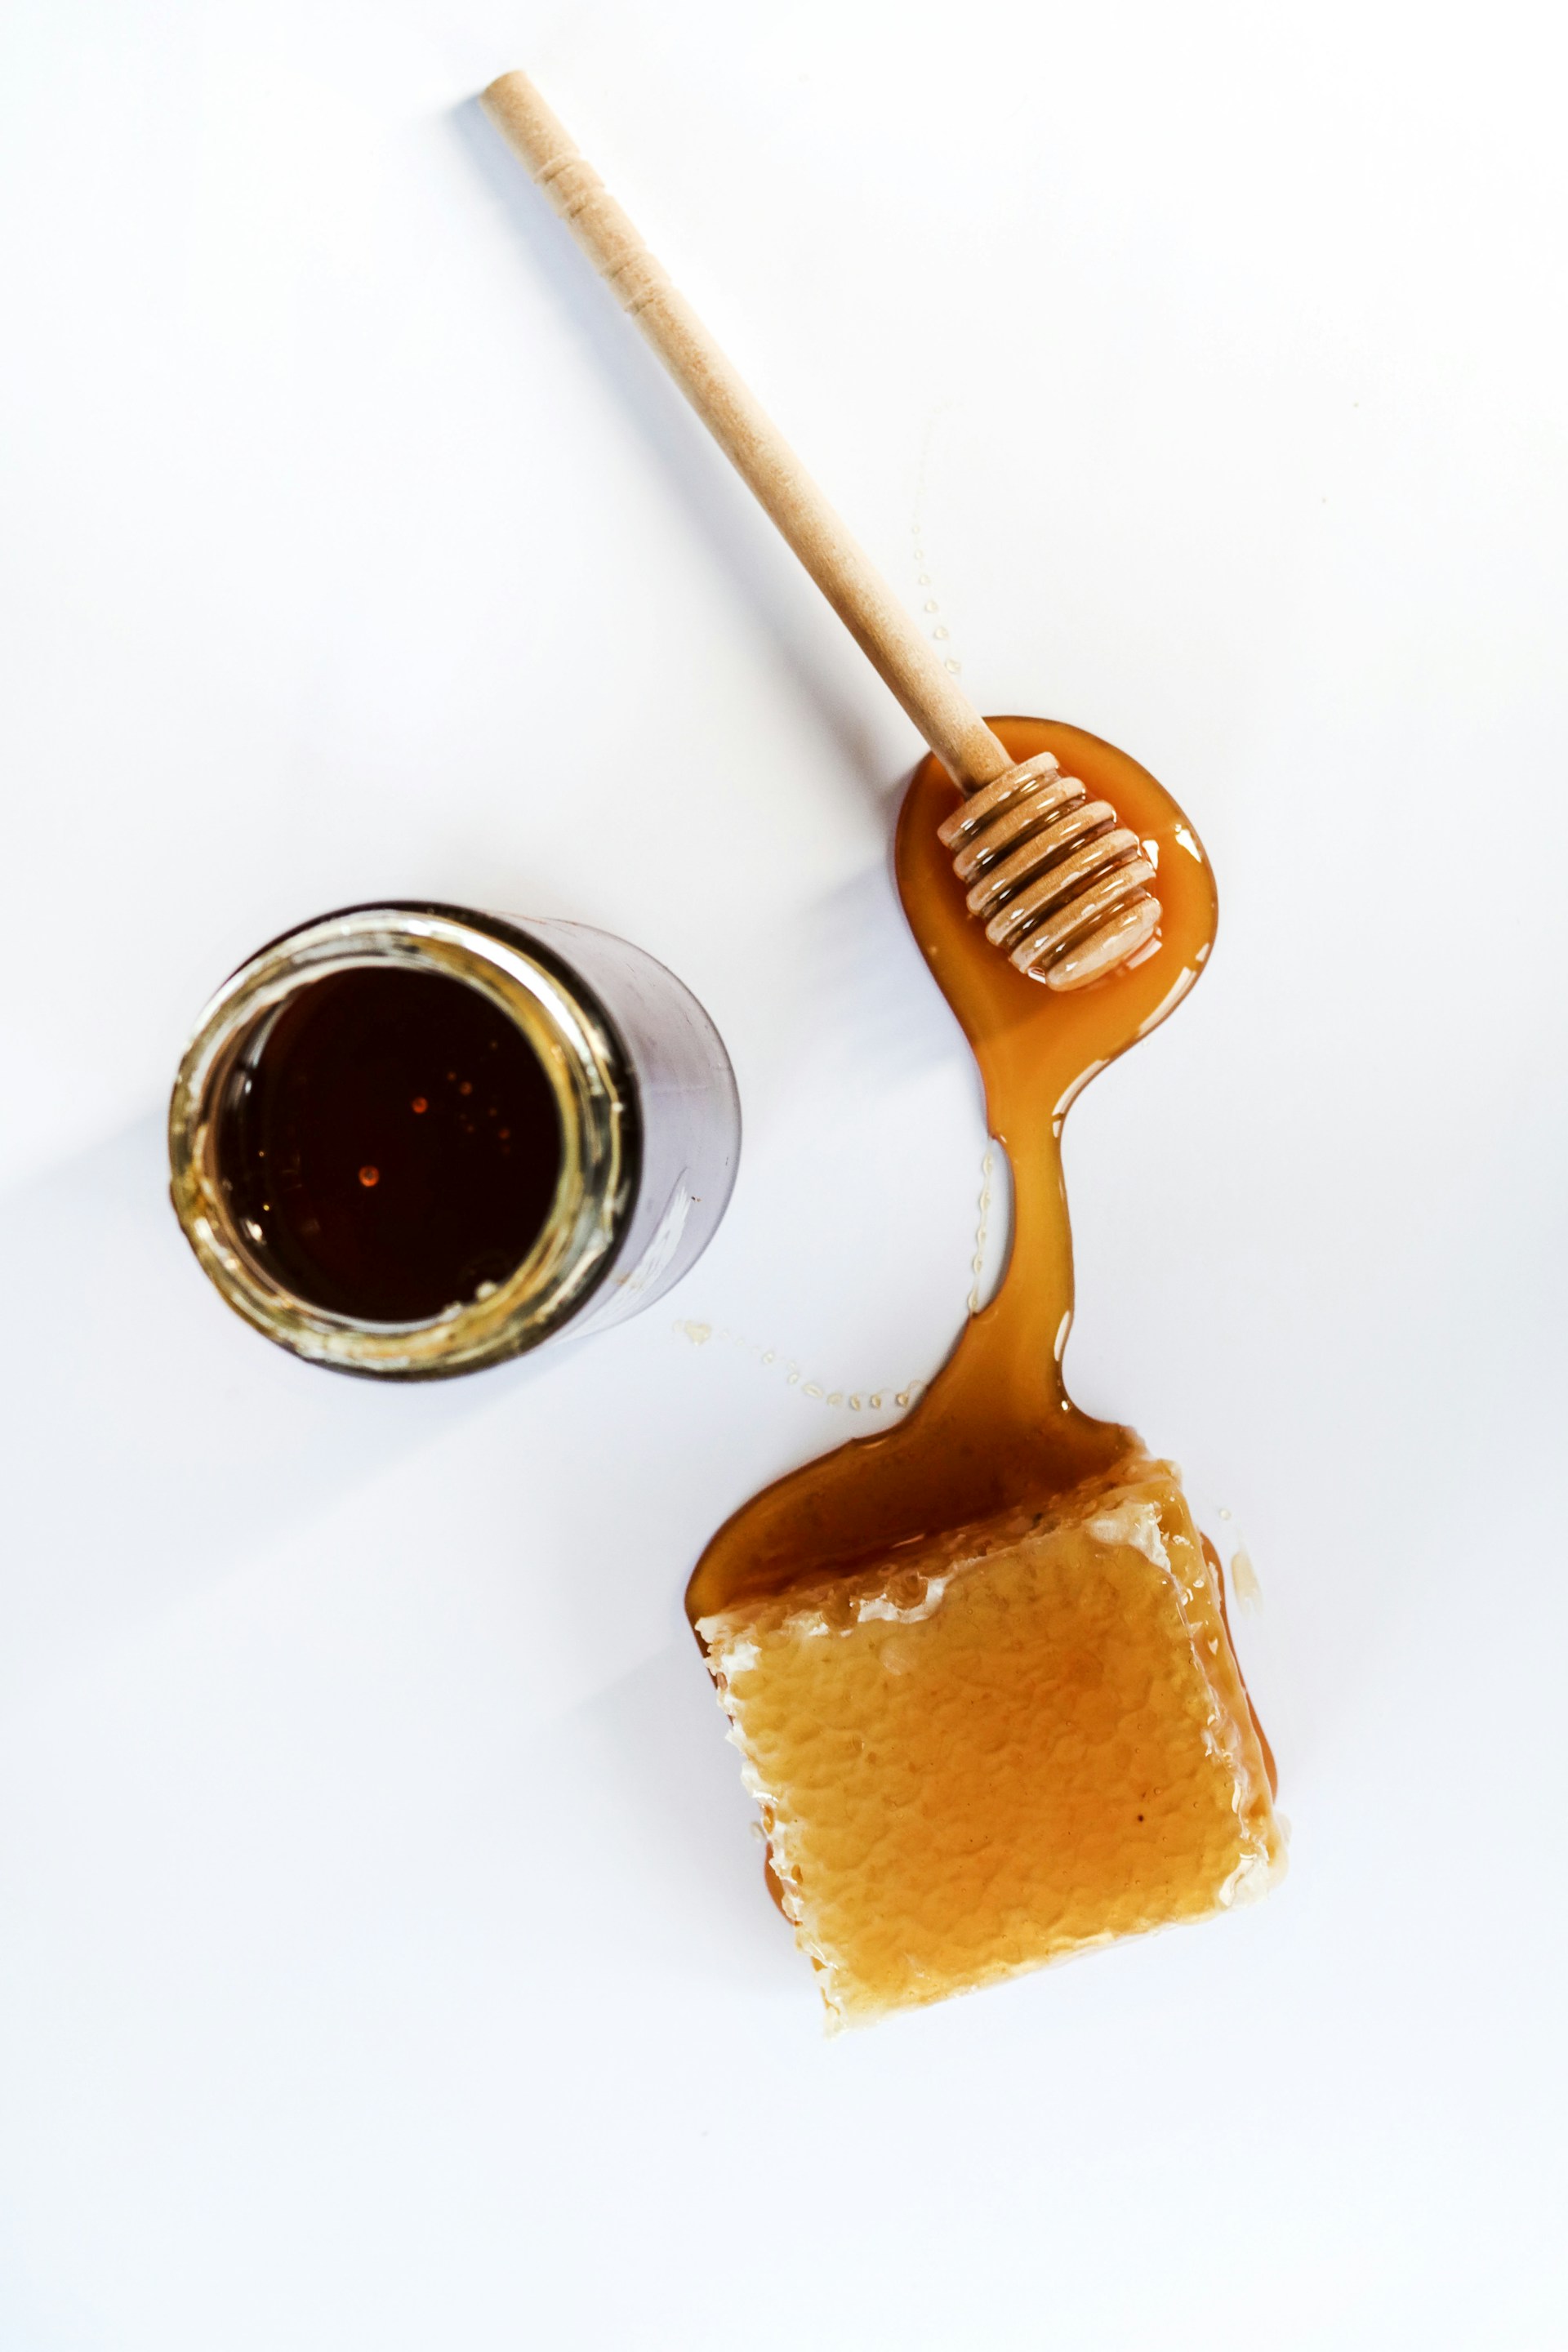 Το μέλι Manuka είναι η φυσική θεραπεία για το φλεγμονώδες, θαμπό και γεμάτο ρυτίδες δέρμα